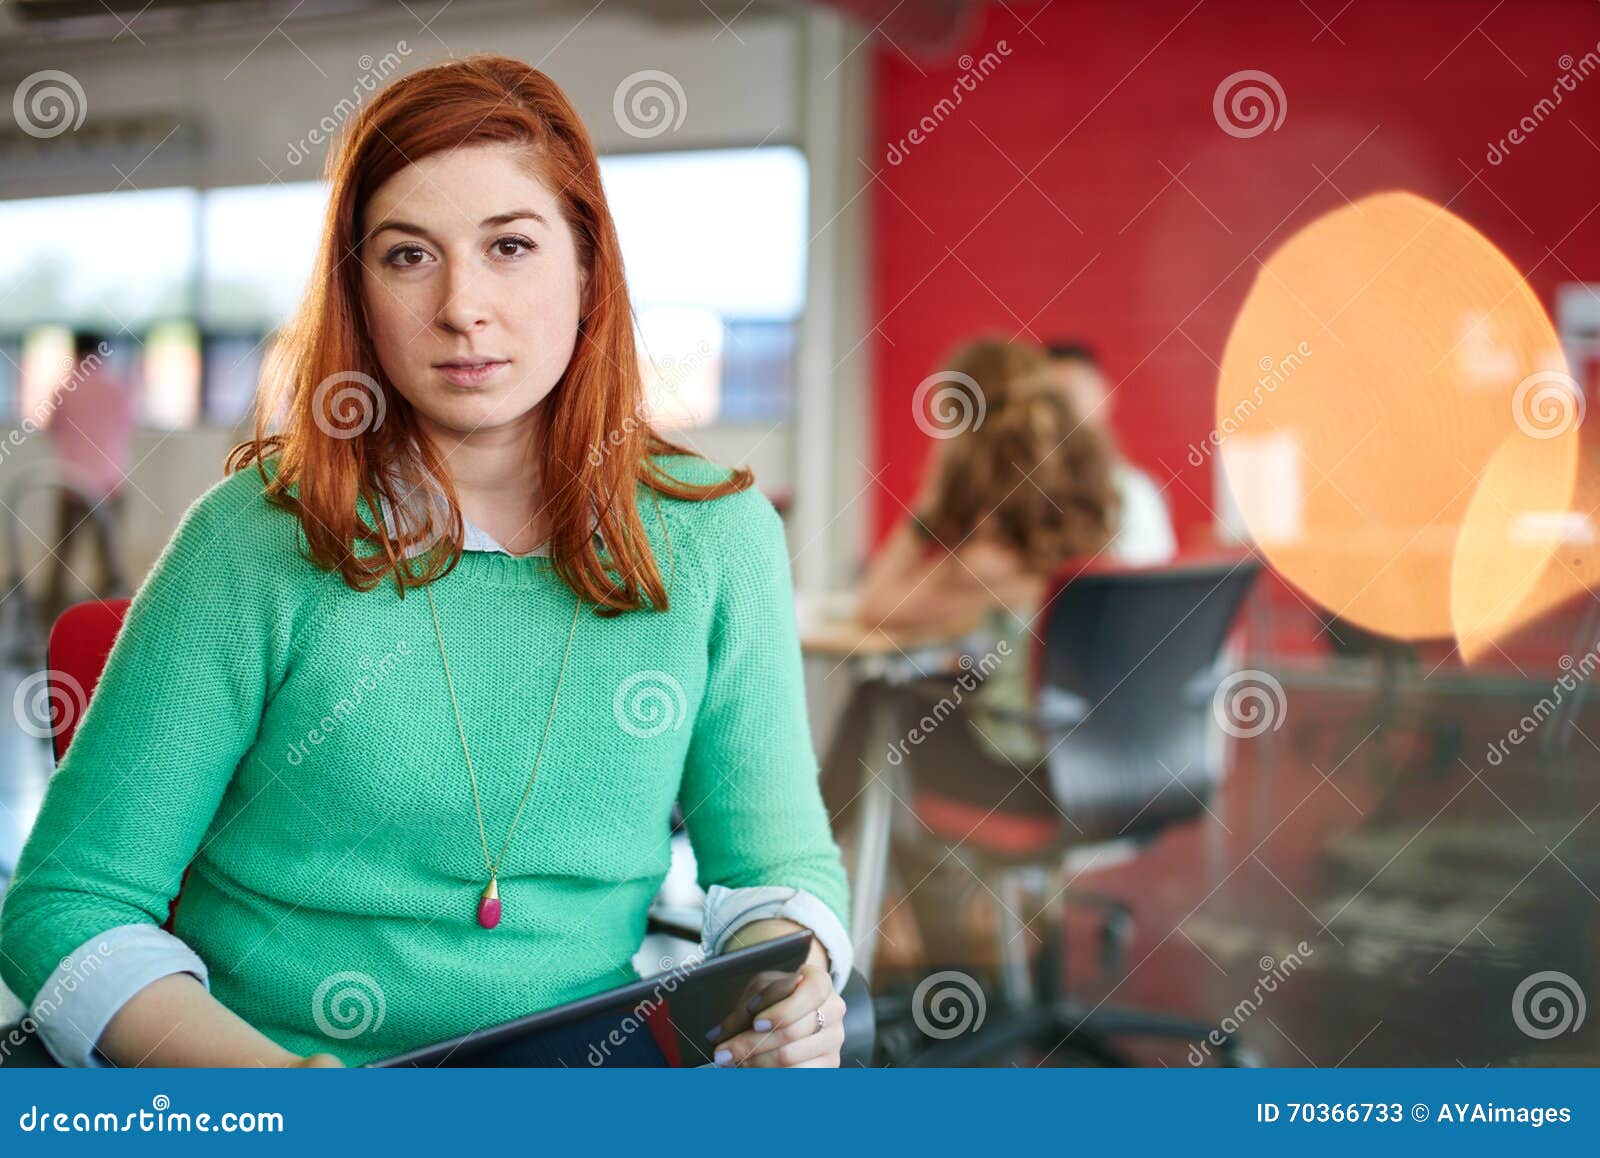 Säkert kvinnligt märkes- arbete på en digital minnestavla i rött idérikt kontorsutrymme. Tillfällig stående av kvinnor för en rödhårig manaffär som använder teknologi i en ljus och solig start med laget i bakgrunden